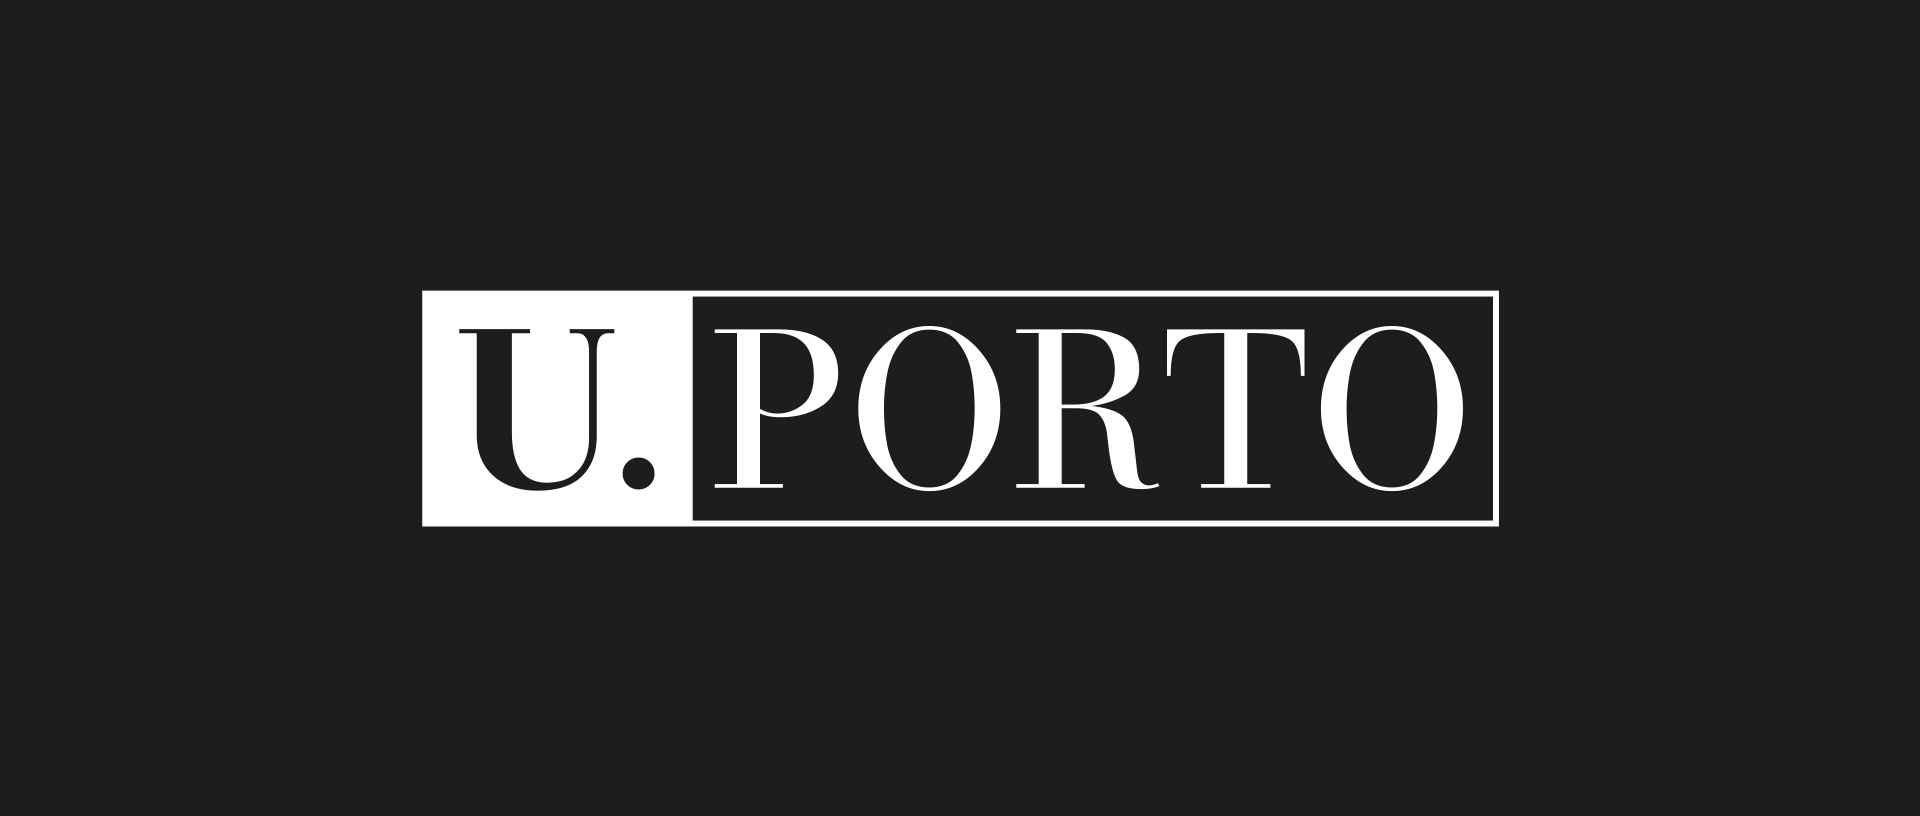 University of Porto logo